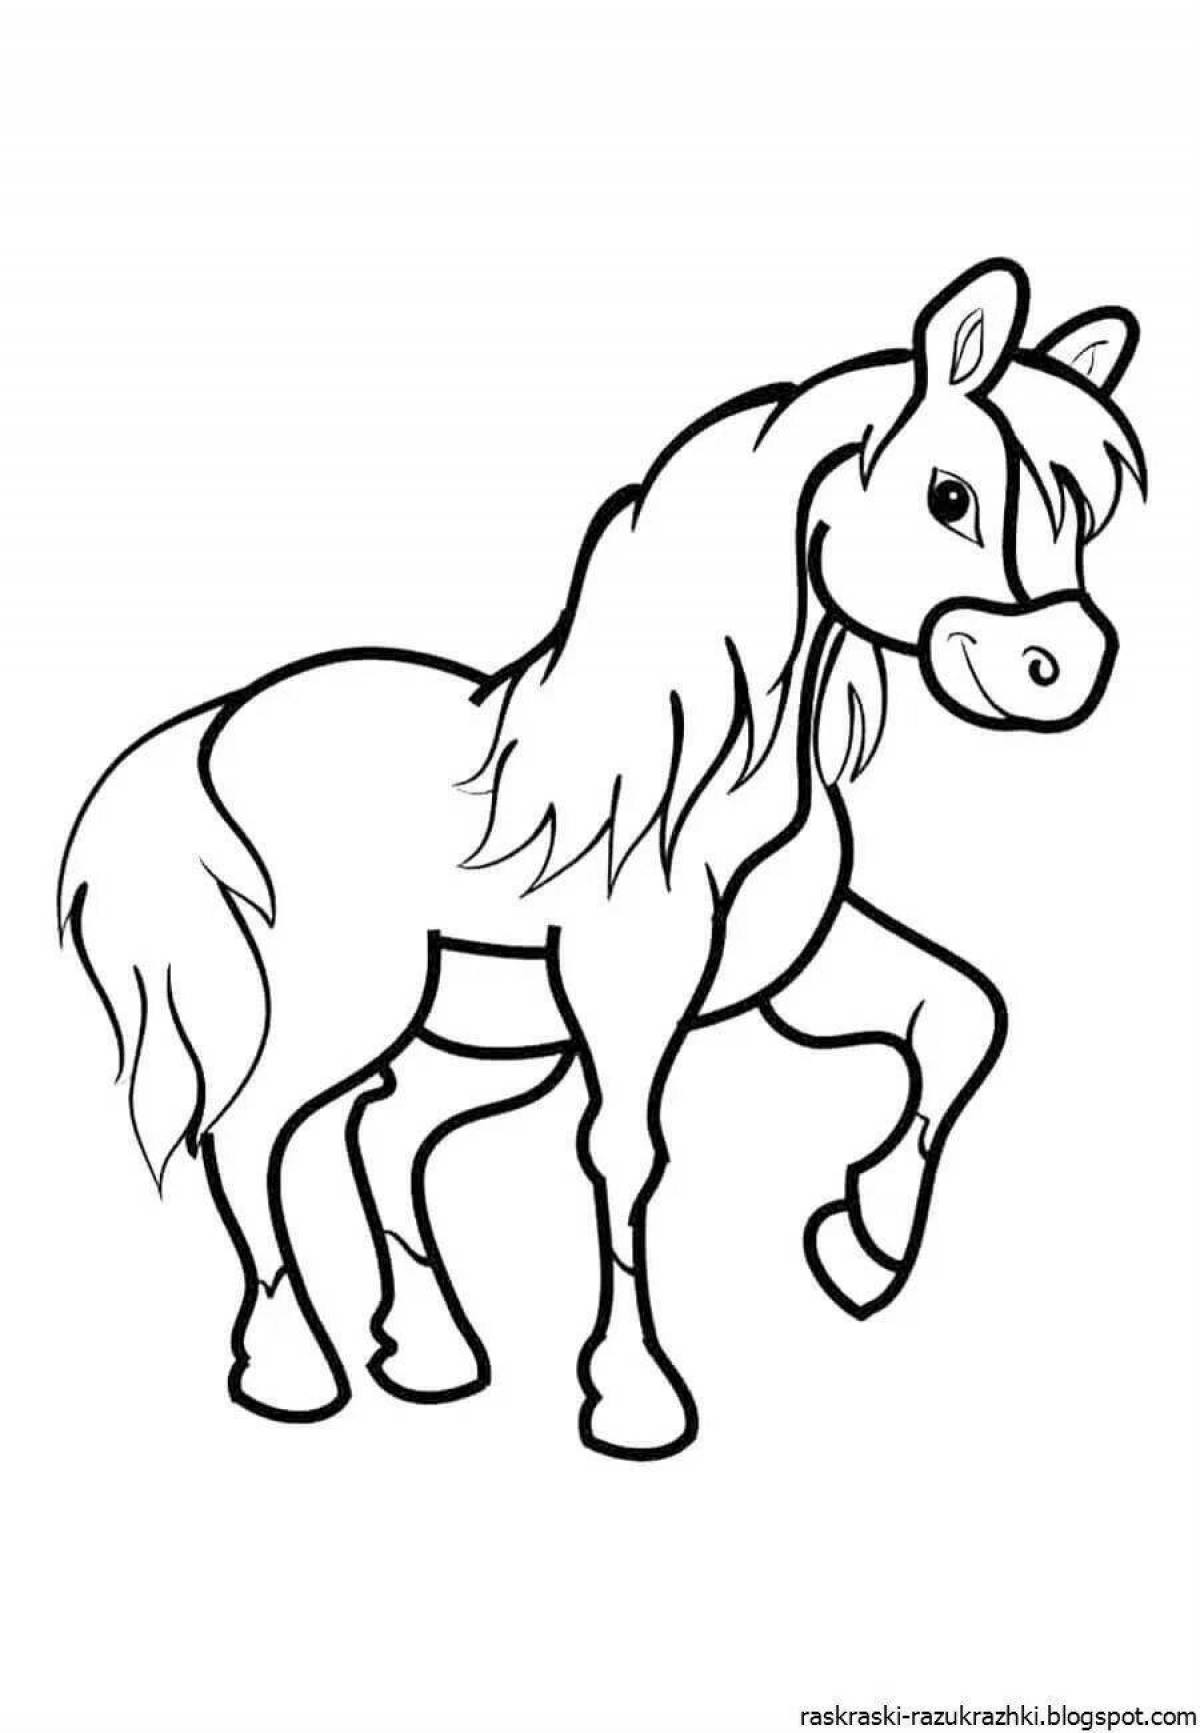 Сказочный рисунок лошади для детей